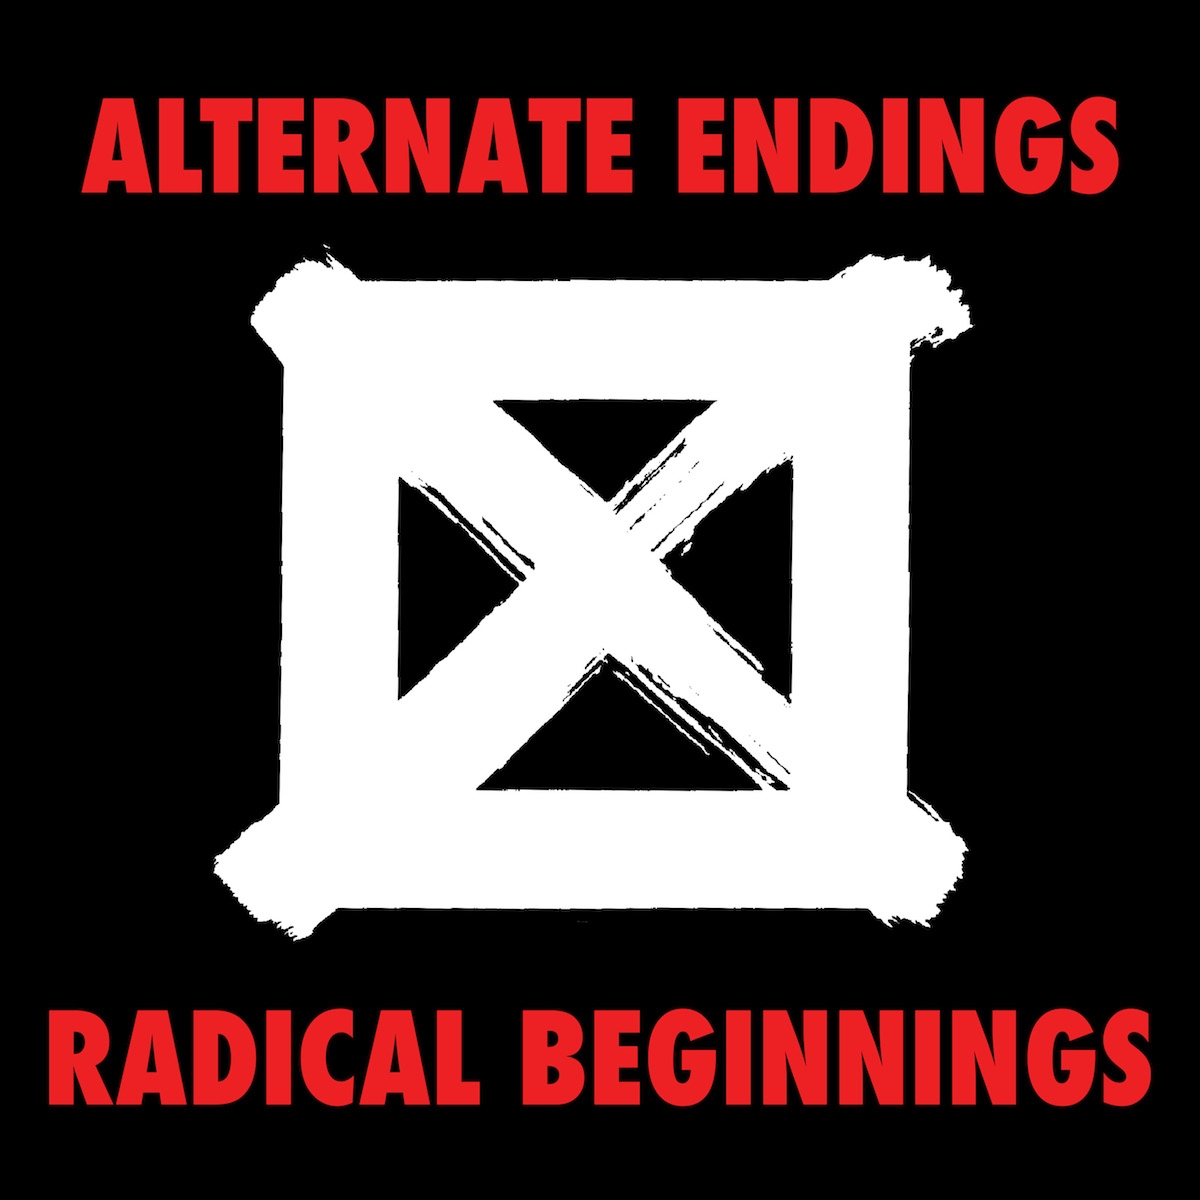 Alternate Endings/Radical Beginnings